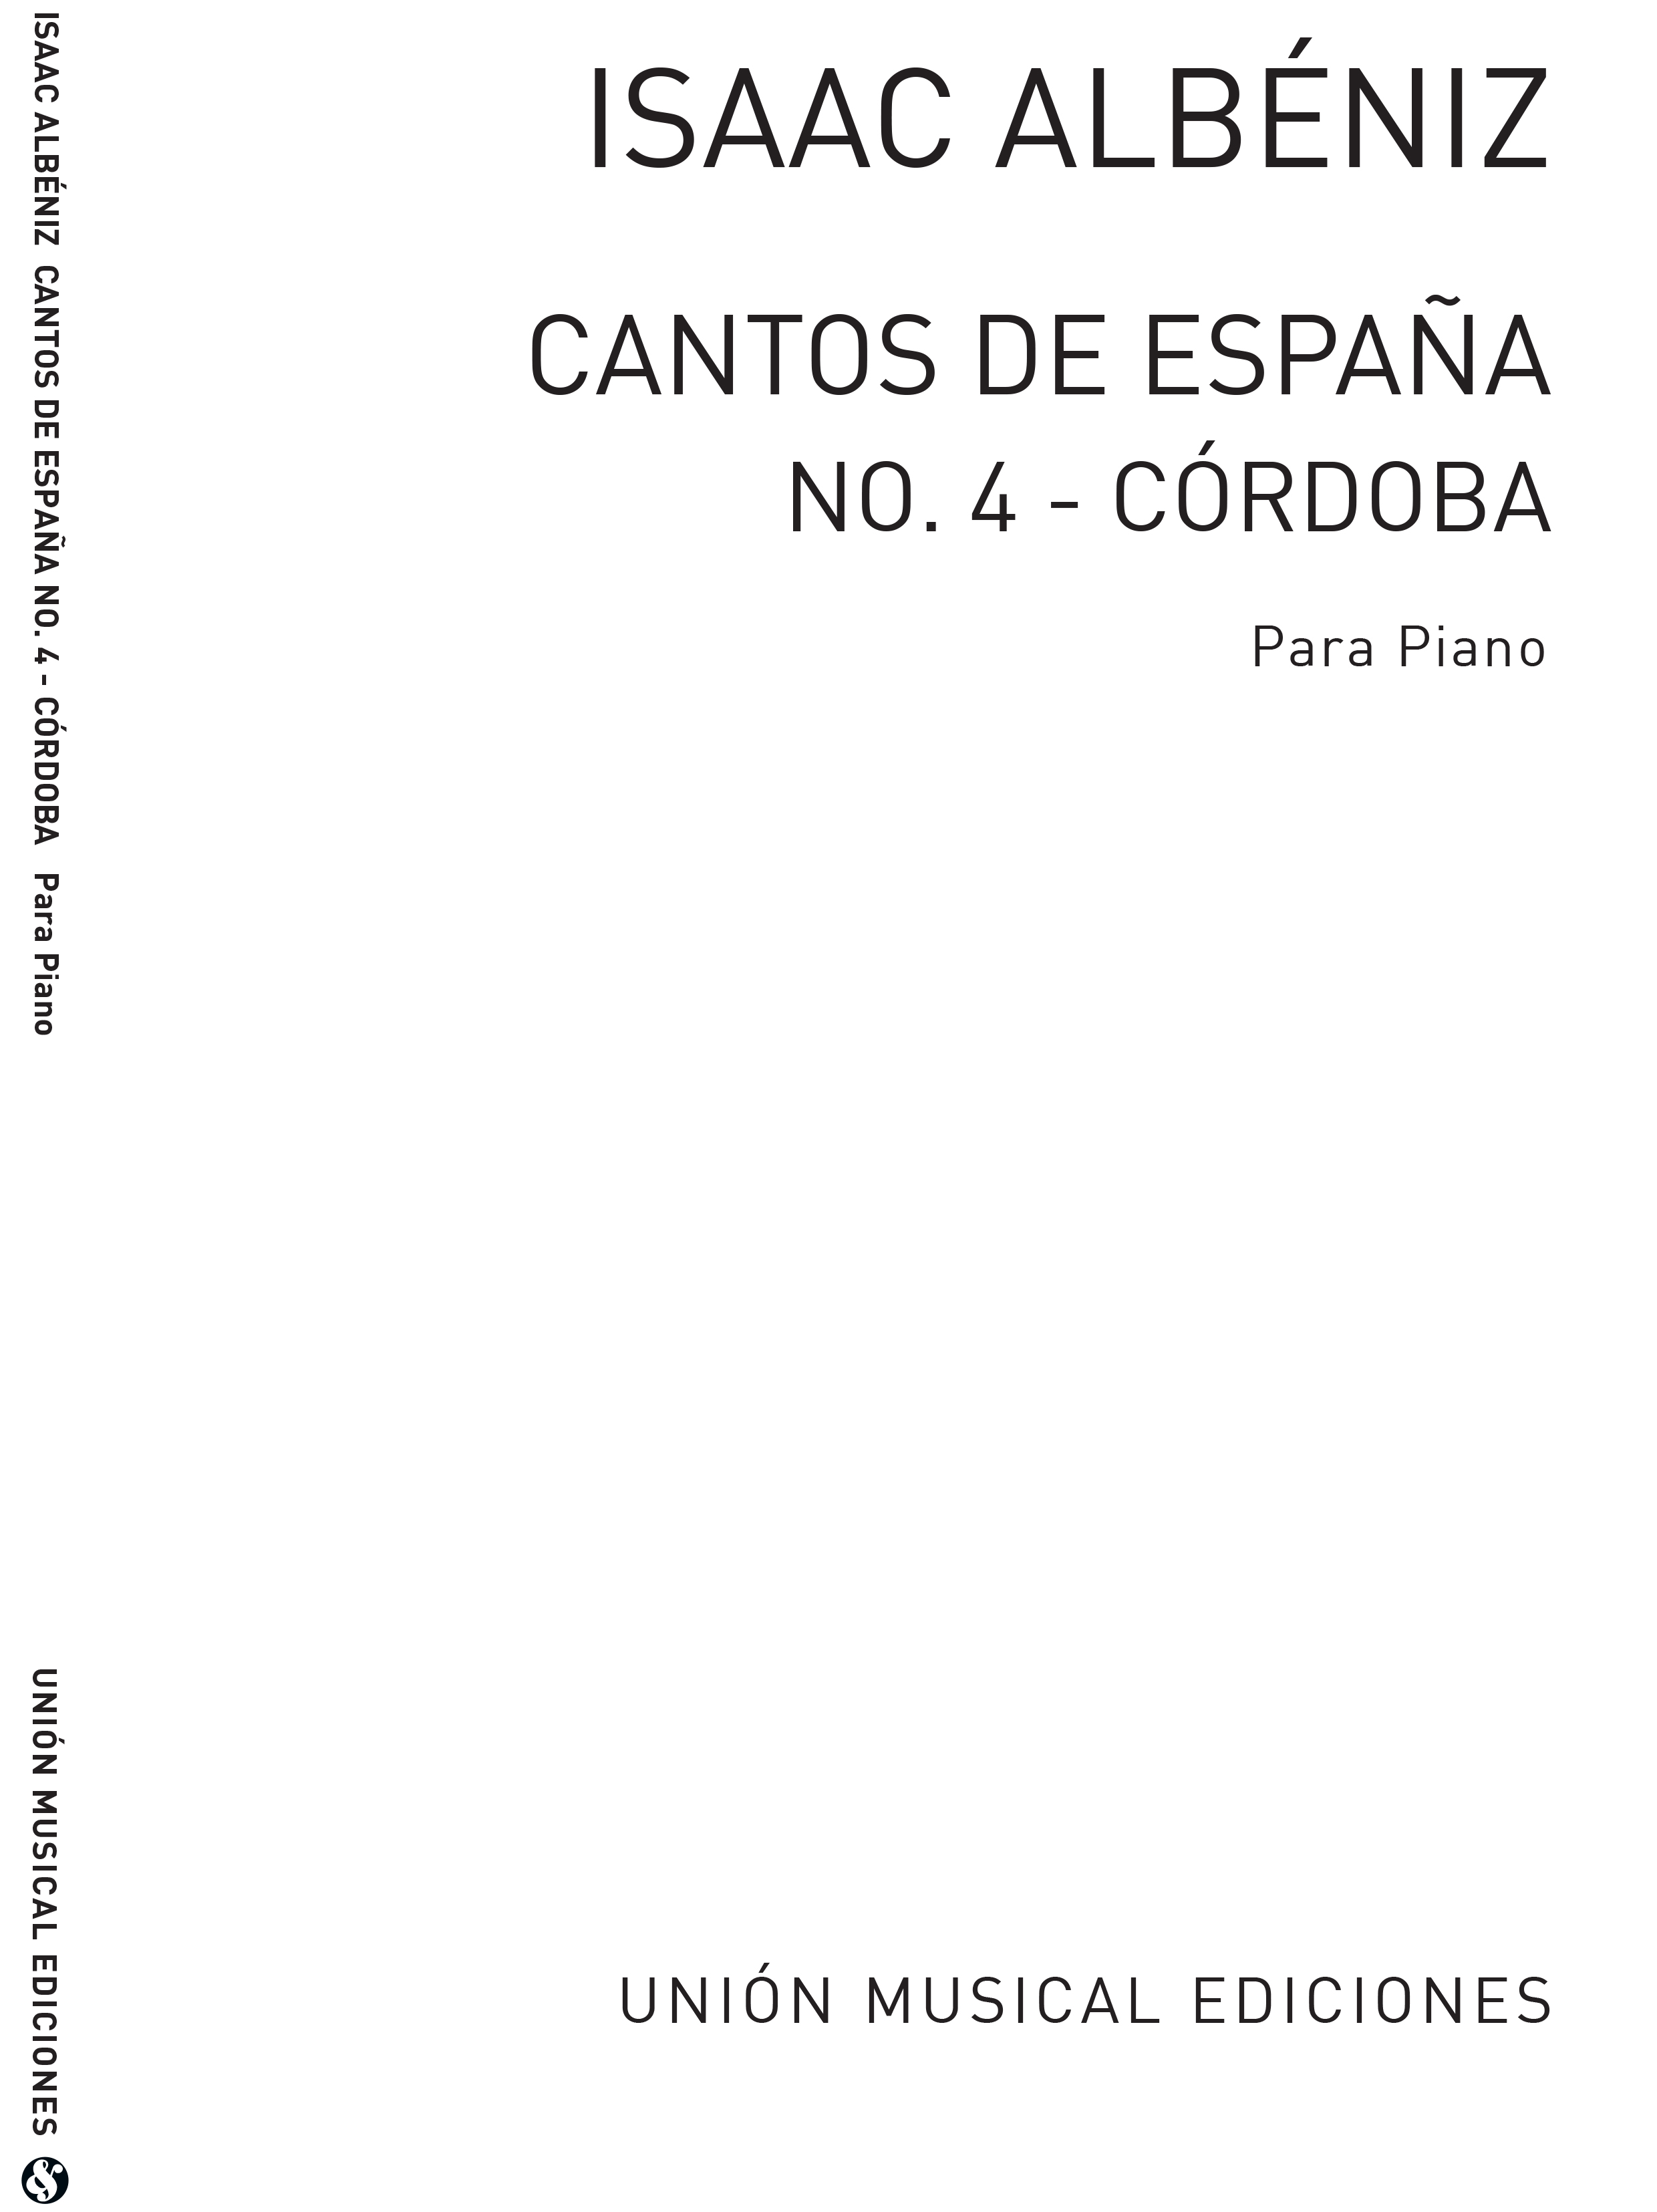 Isaac Albniz: Albeniz Cordoba No.4 De Cantos De Espana Op.232: Piano: